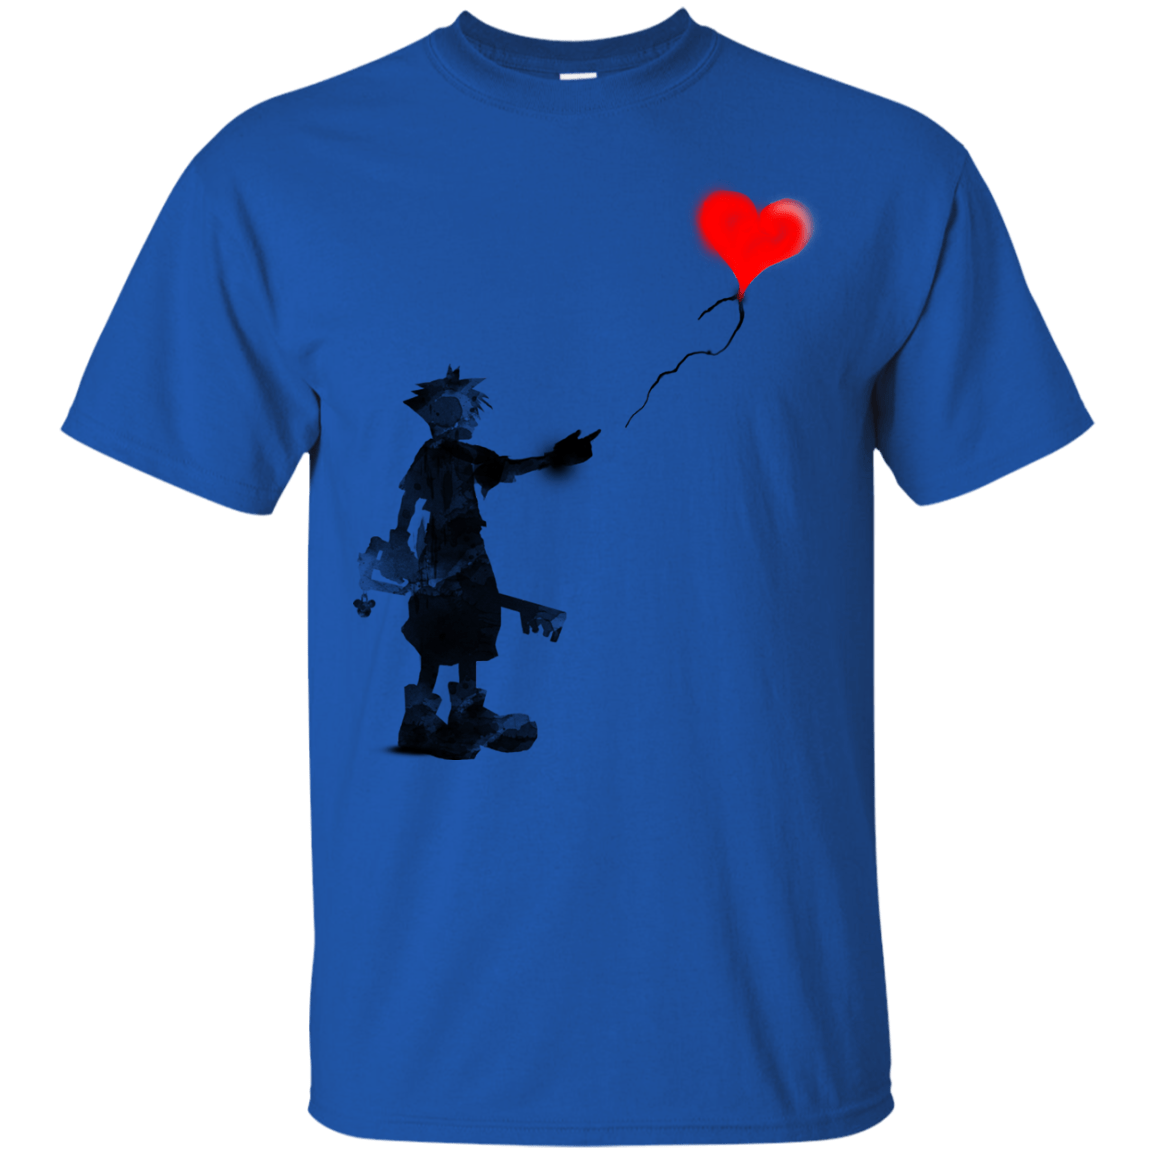 T-Shirts Royal / S Boy and Balloon T-Shirt